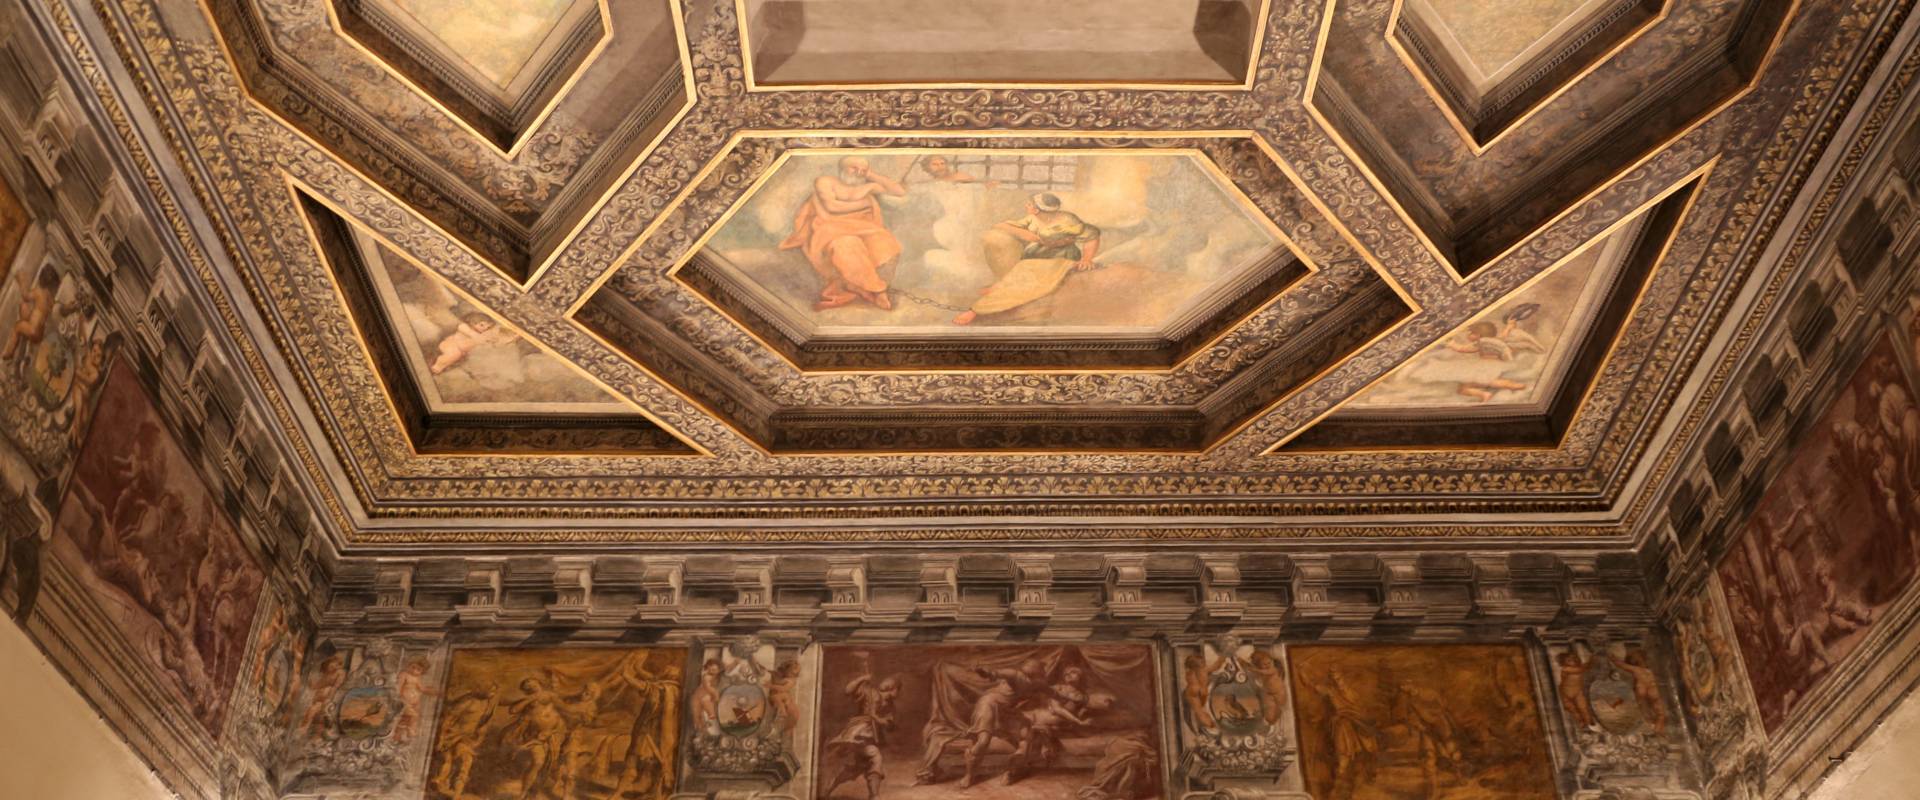 Gualtieri, palazzo bentivoglio, sala di icaro, fregio con storie di roma da tito livio, 1600-05 circa, 03 foto di Sailko